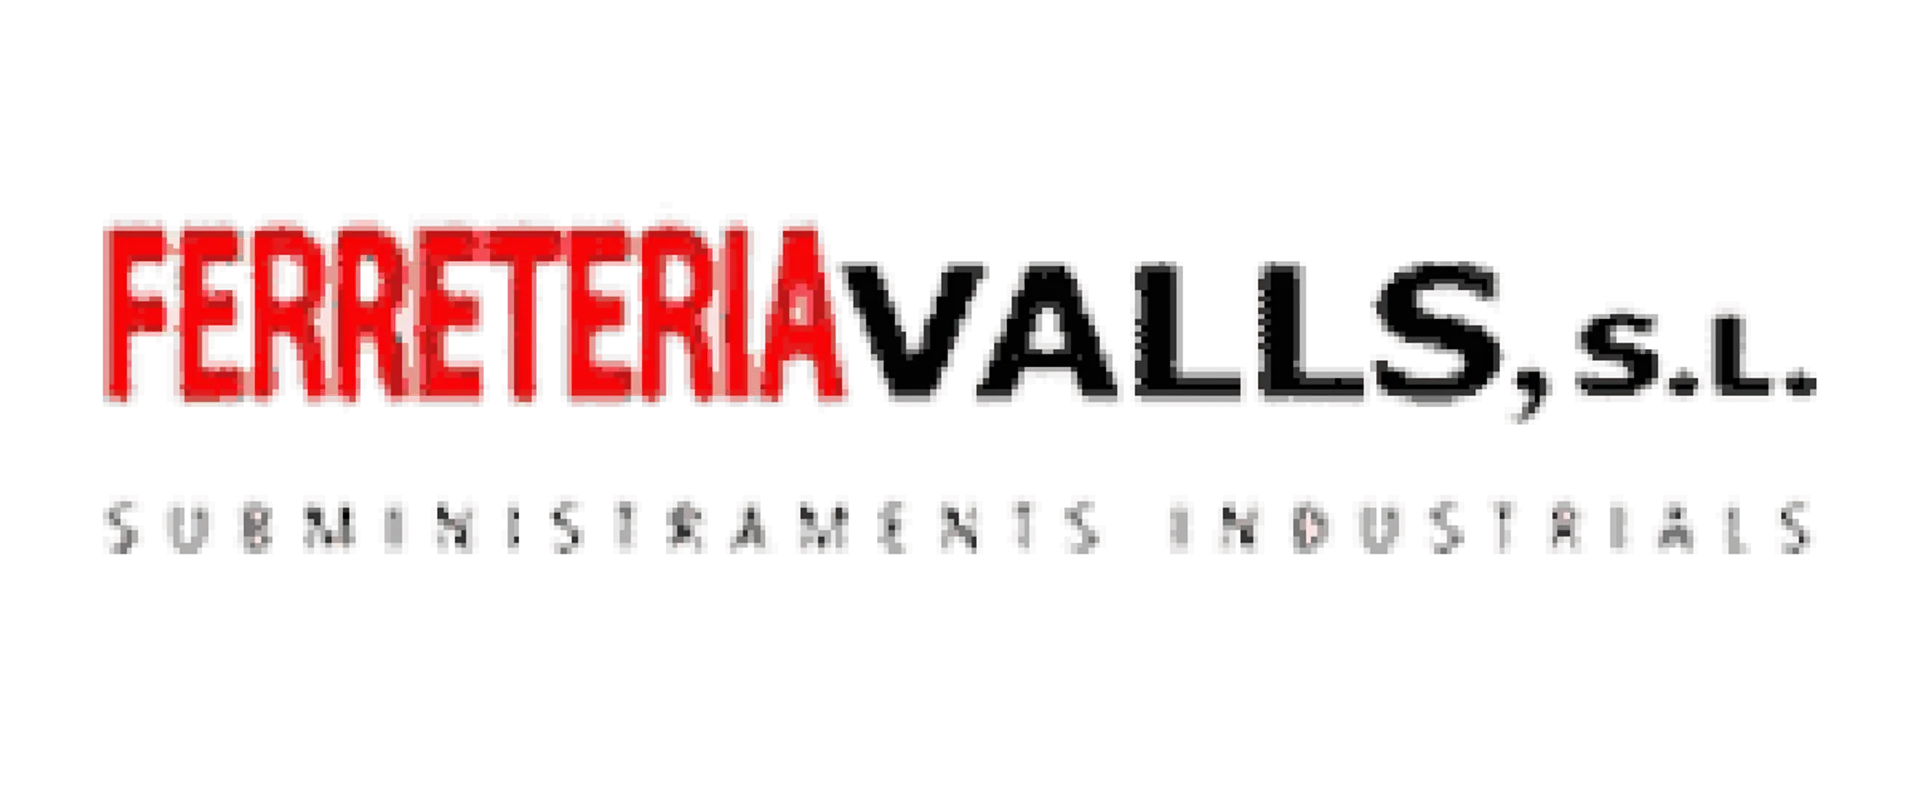 FERRETERÍA VALLS logo de catálogo